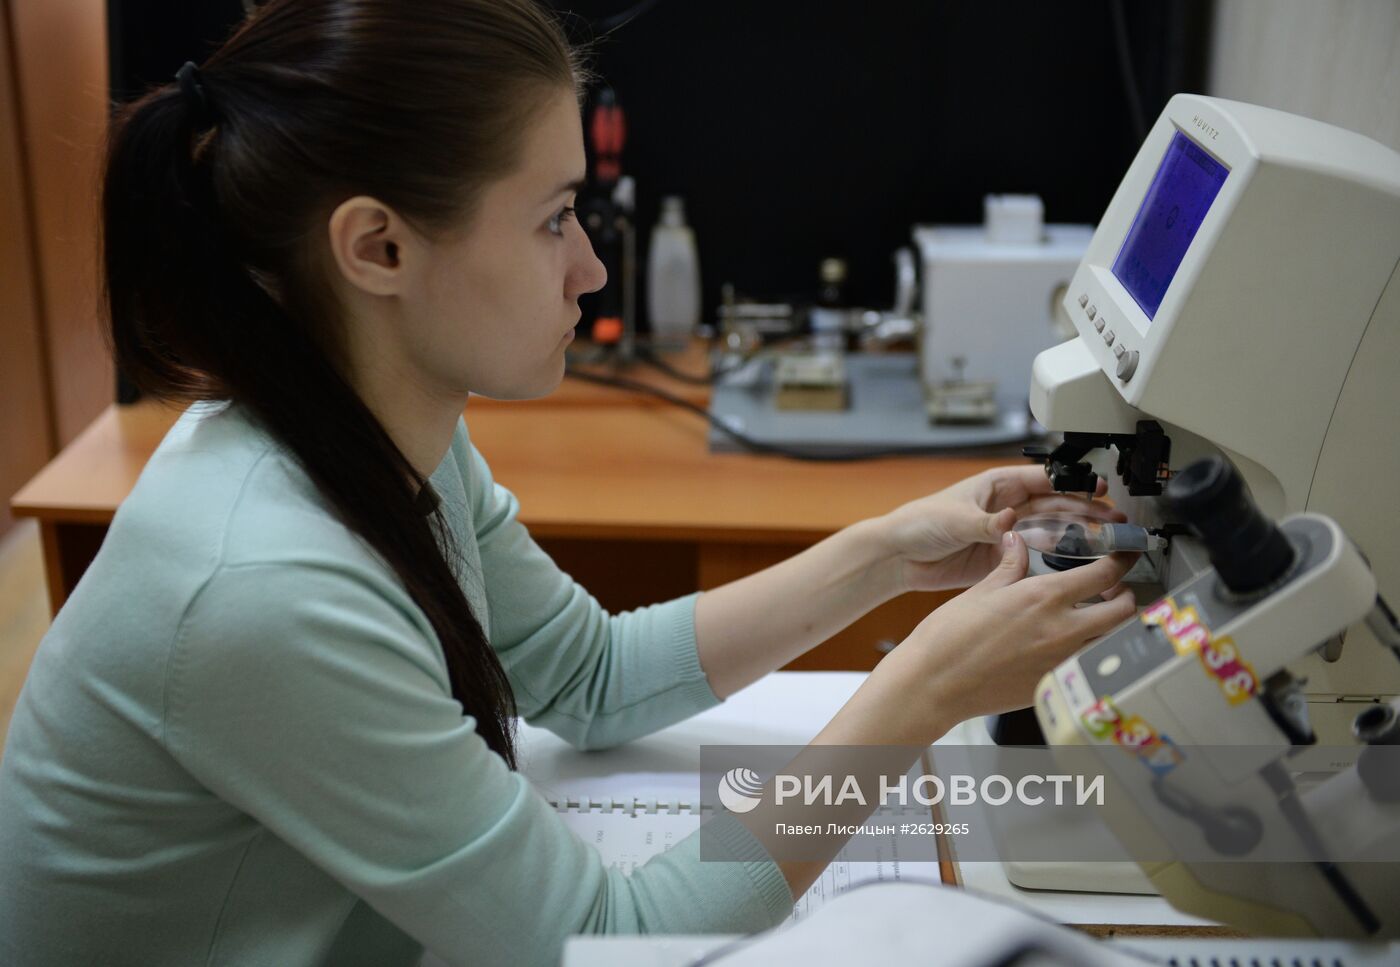 Научно-производственная компания "Очки для вас" в Екатеринбурге